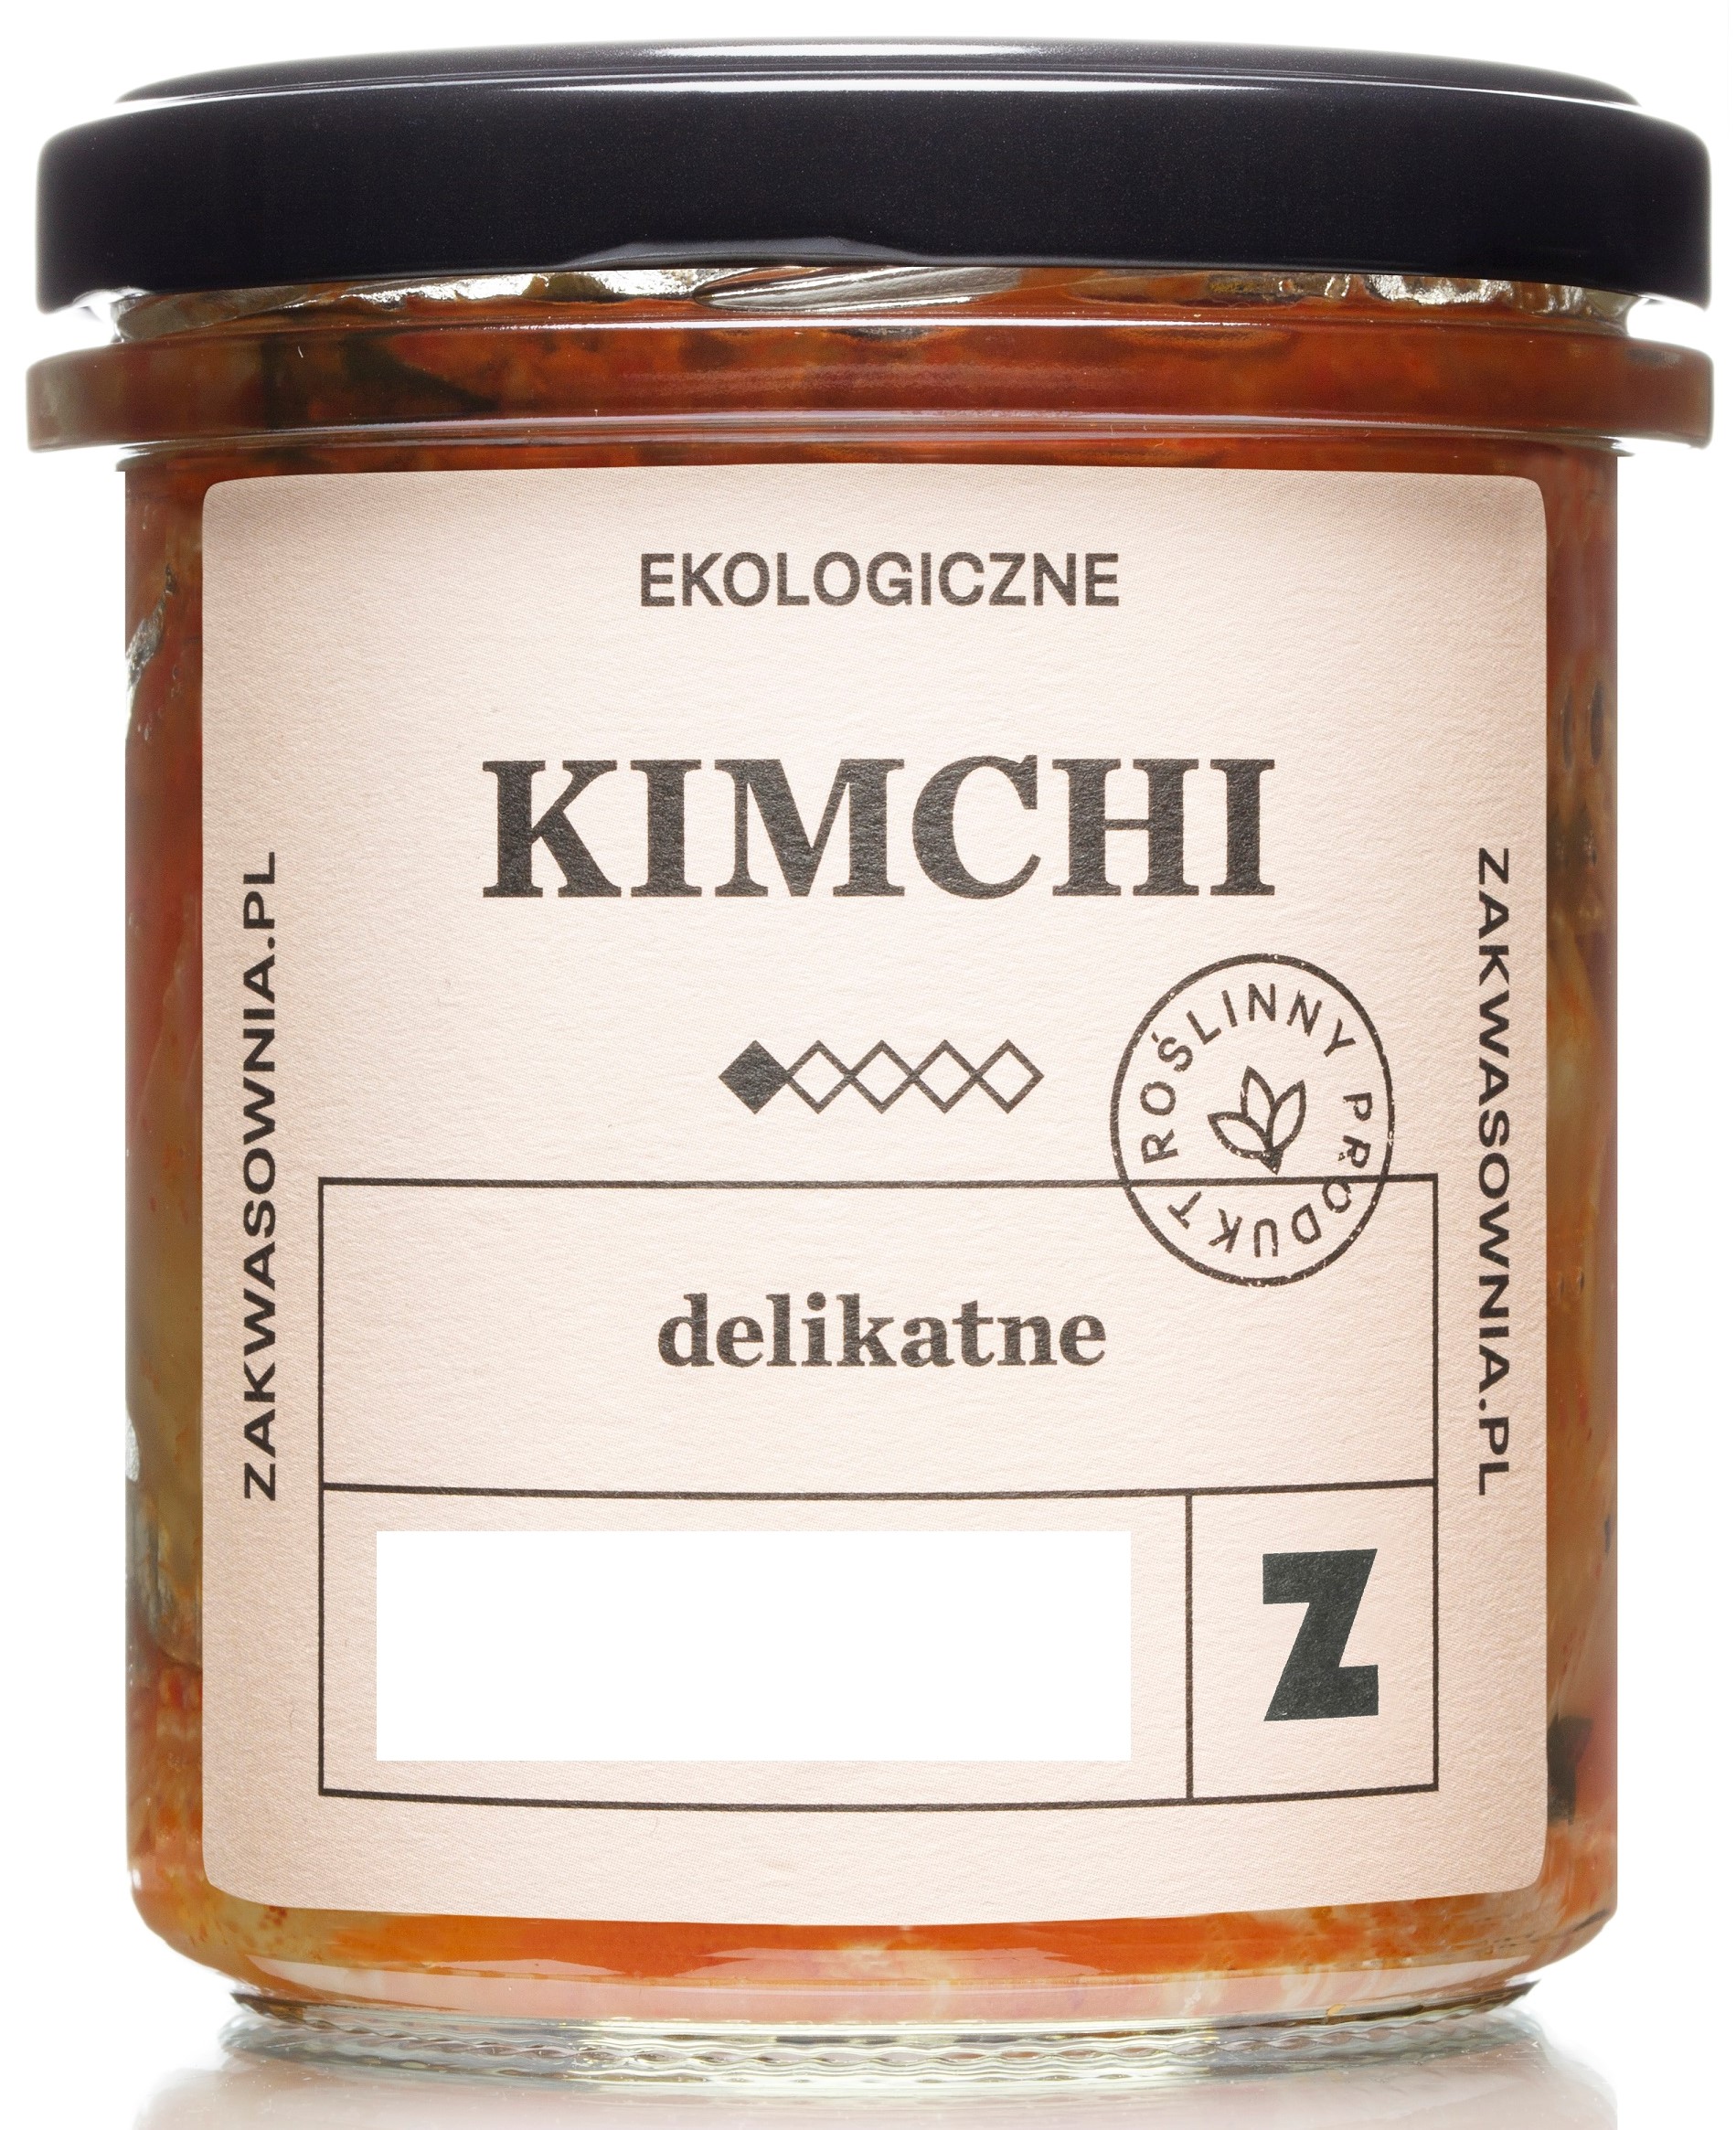 Kimchi masa madre delicada, ecológica